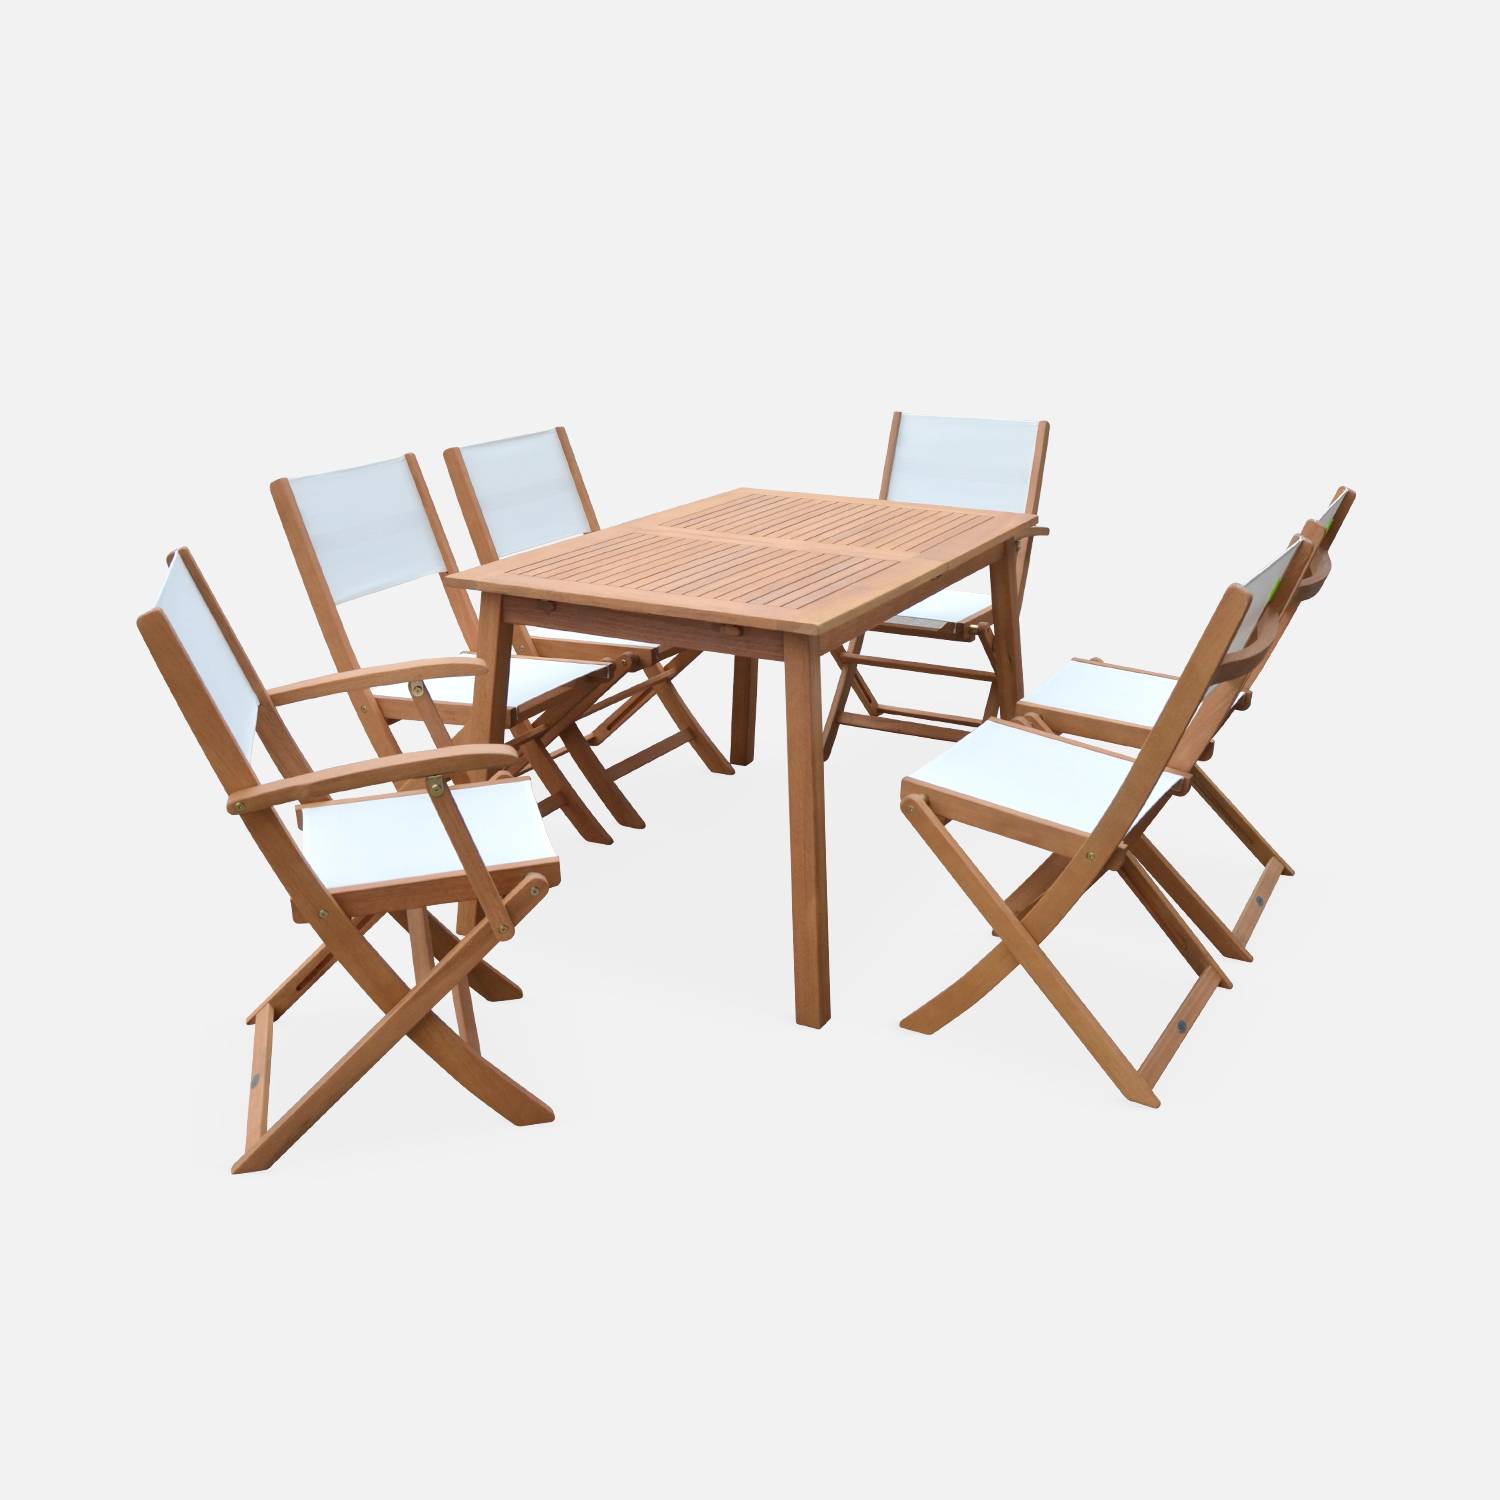 Ausziehbare Gartenmöbel aus Holz - Almeria - Tisch 120/180 cm mit Verlängerung, 2 Sesseln und 4 Stühlen aus geöltem FSC-Eukalyptusholz und weißes Textilene Photo3